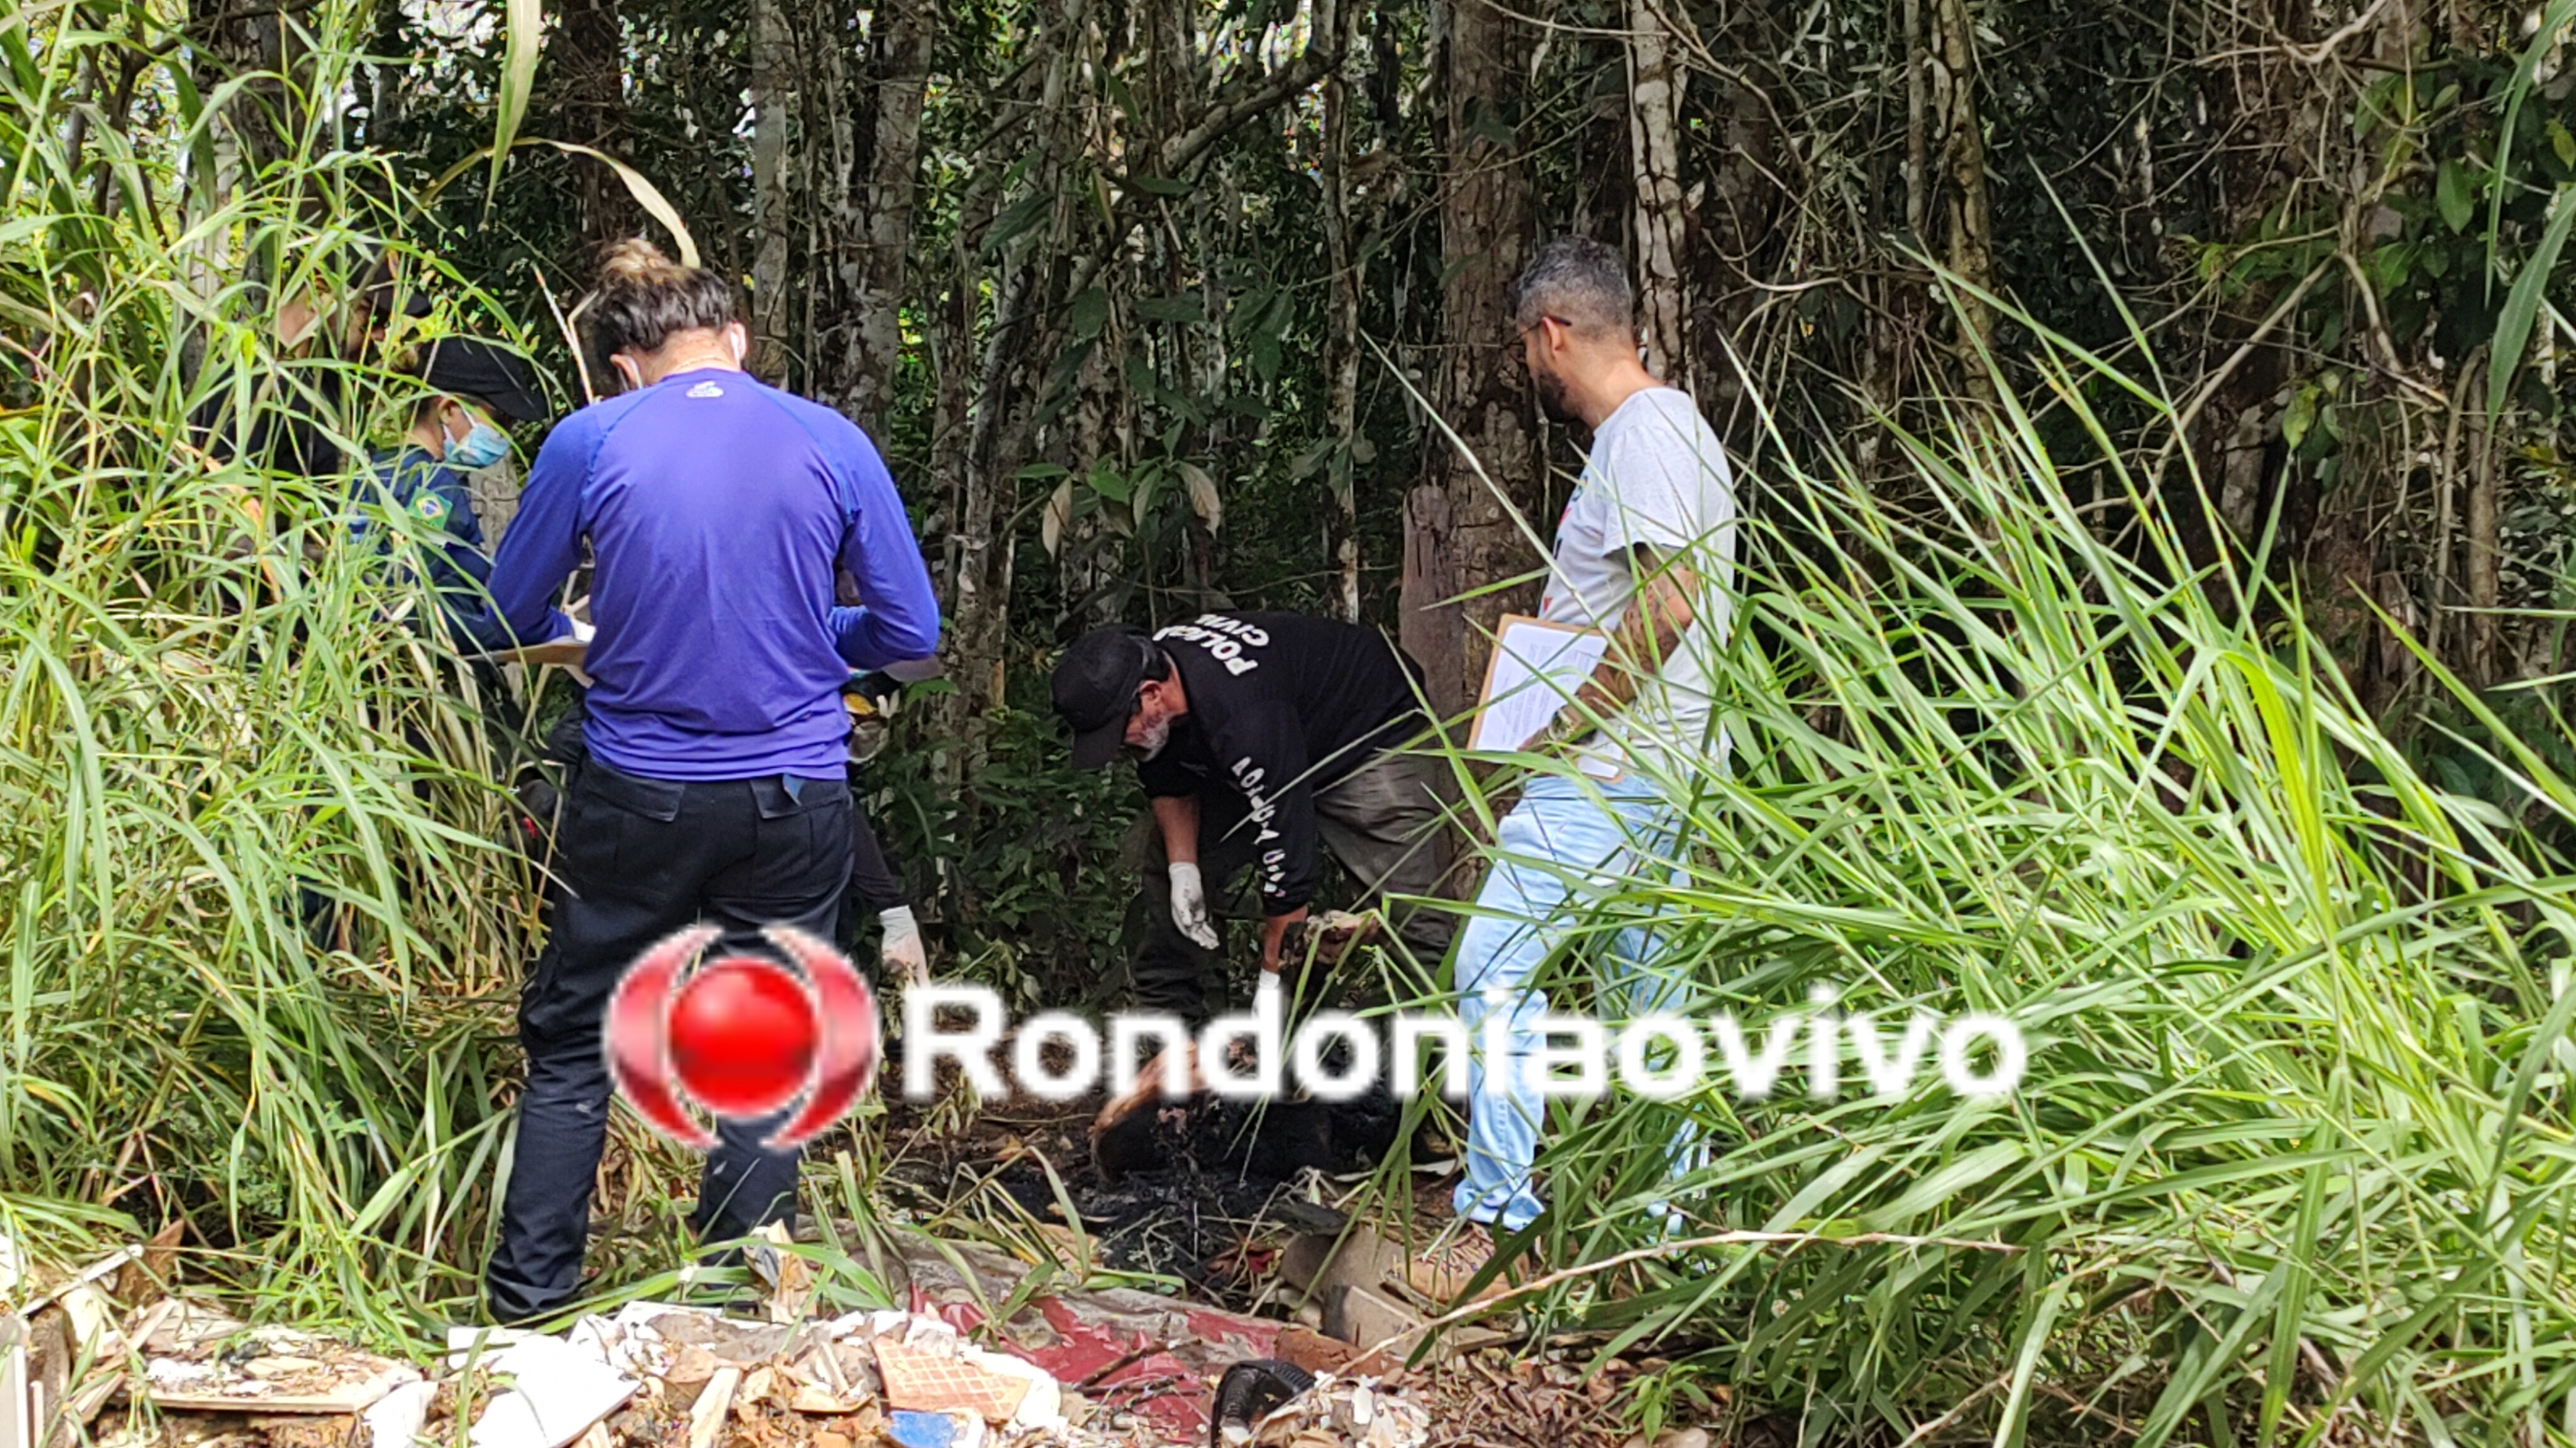 TATUAGENS: Polícia busca identificar corpo carbonizado na beira de estrada 